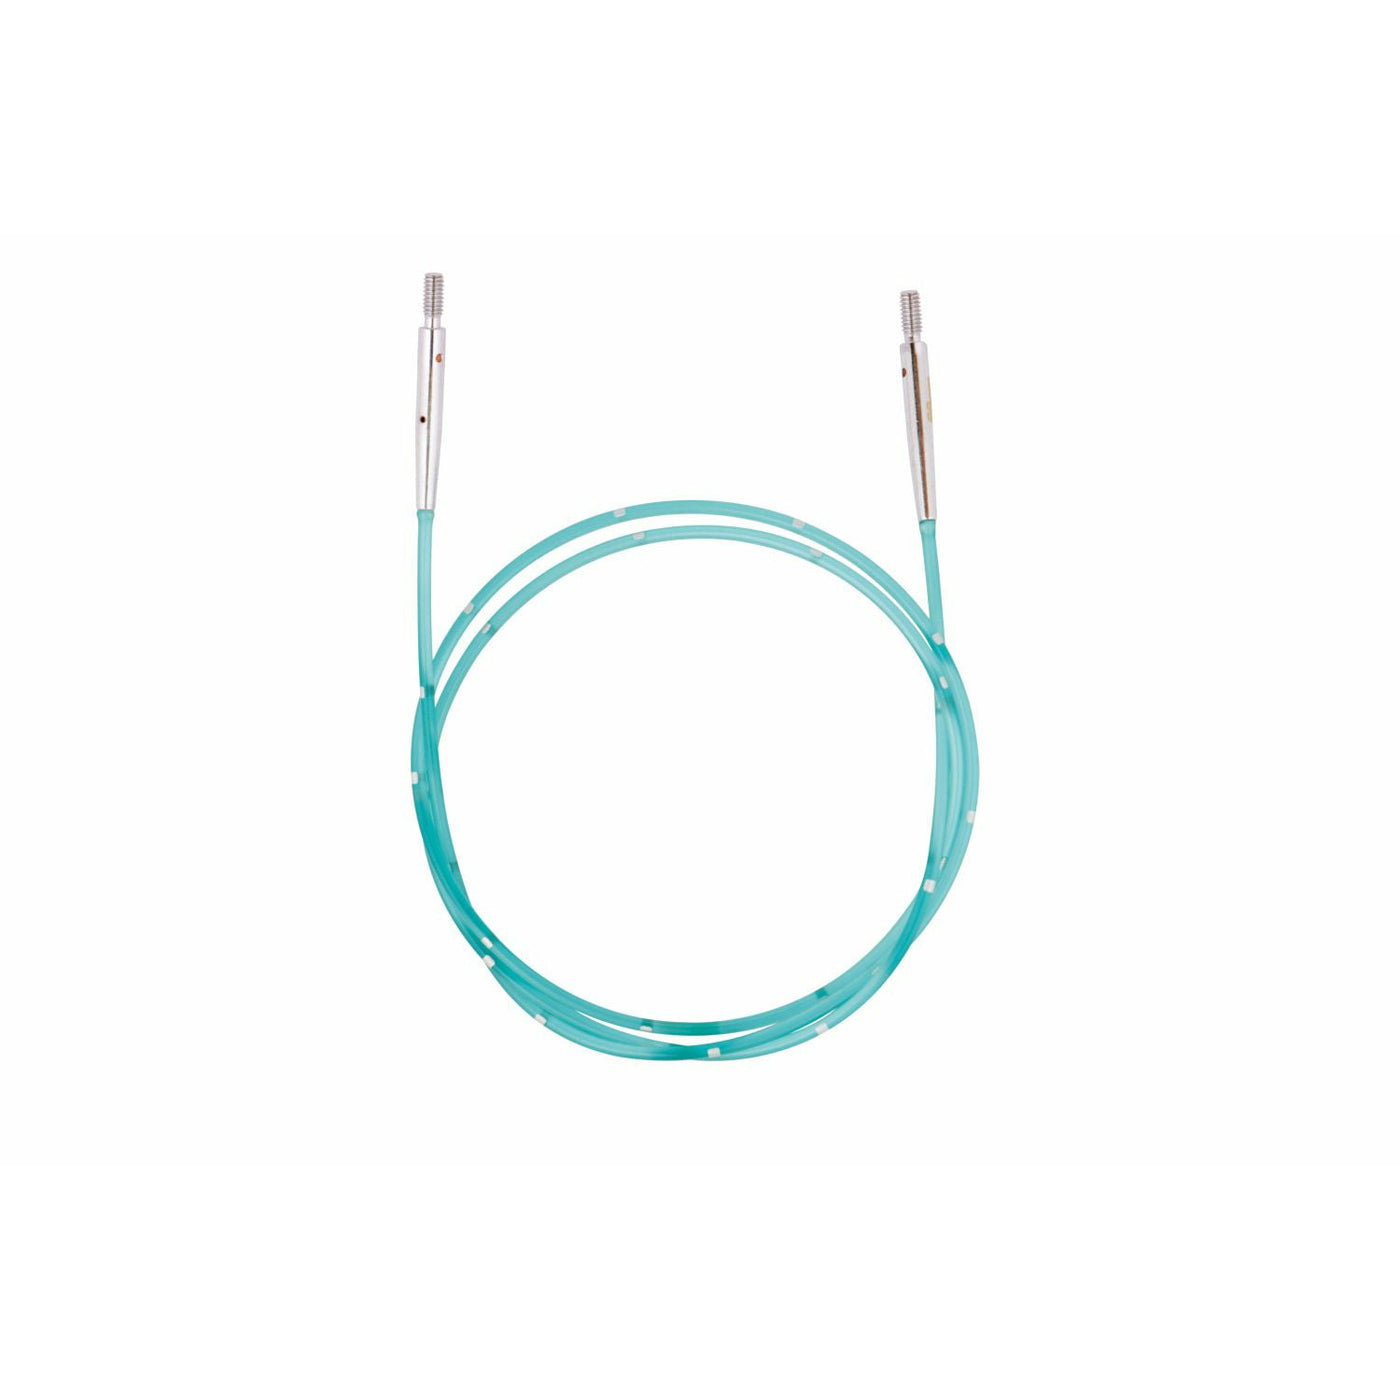 Seil für Nadelspitzen 56 cm blau 80 cm